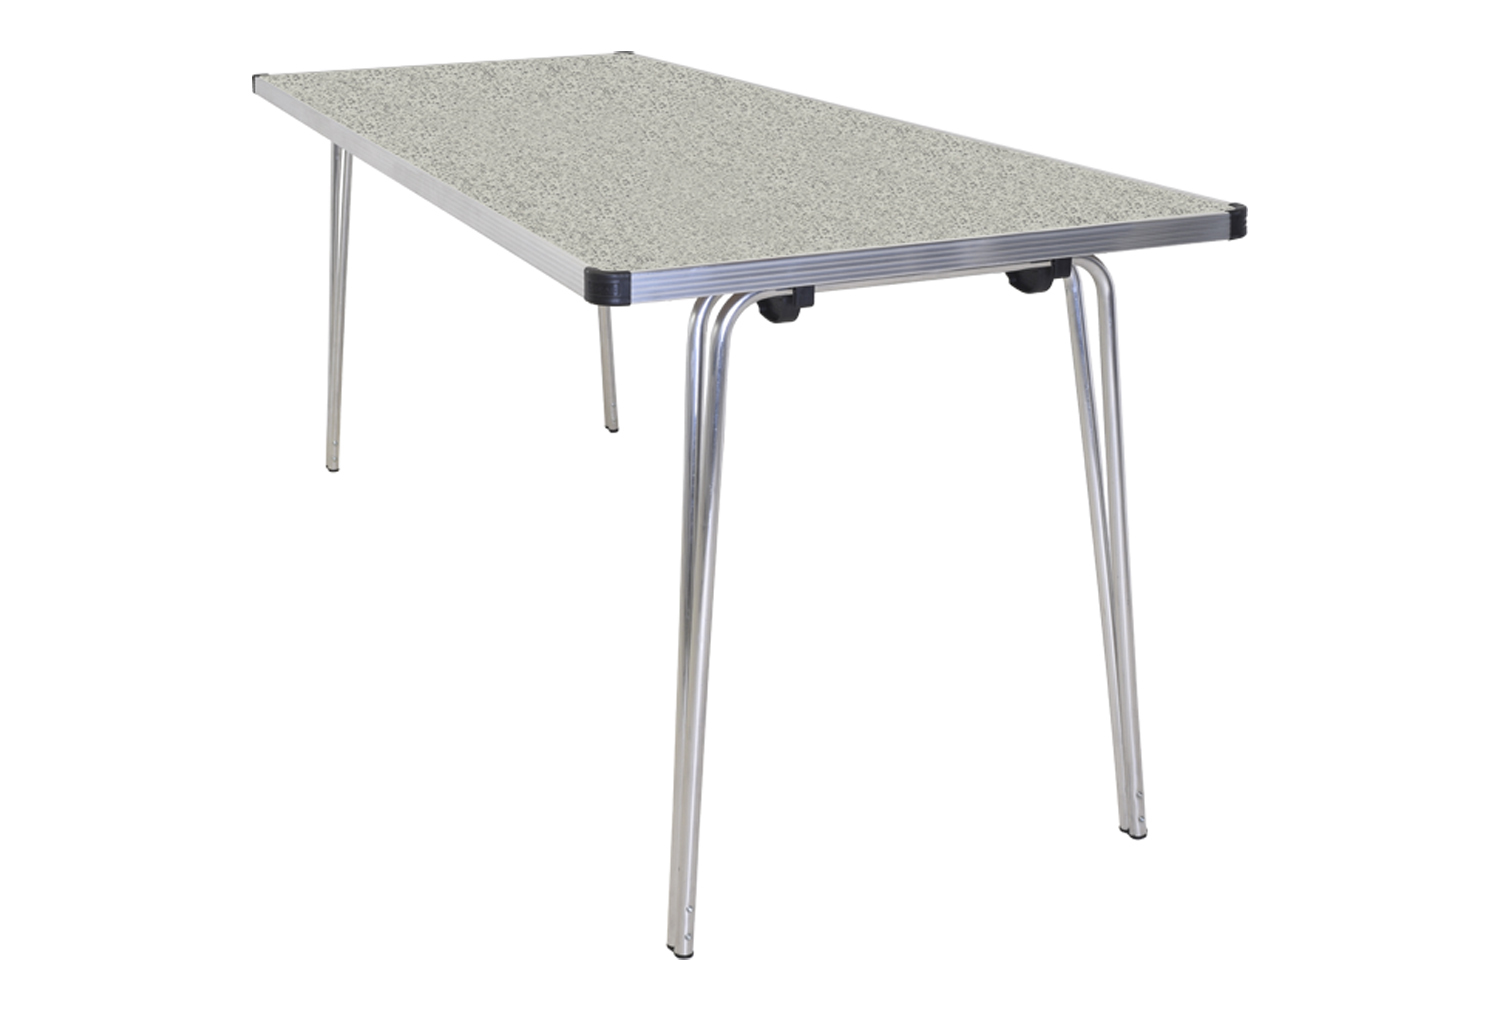 Gopak Contour Plus Folding Table, 122wx69d (cm), Snow Grit